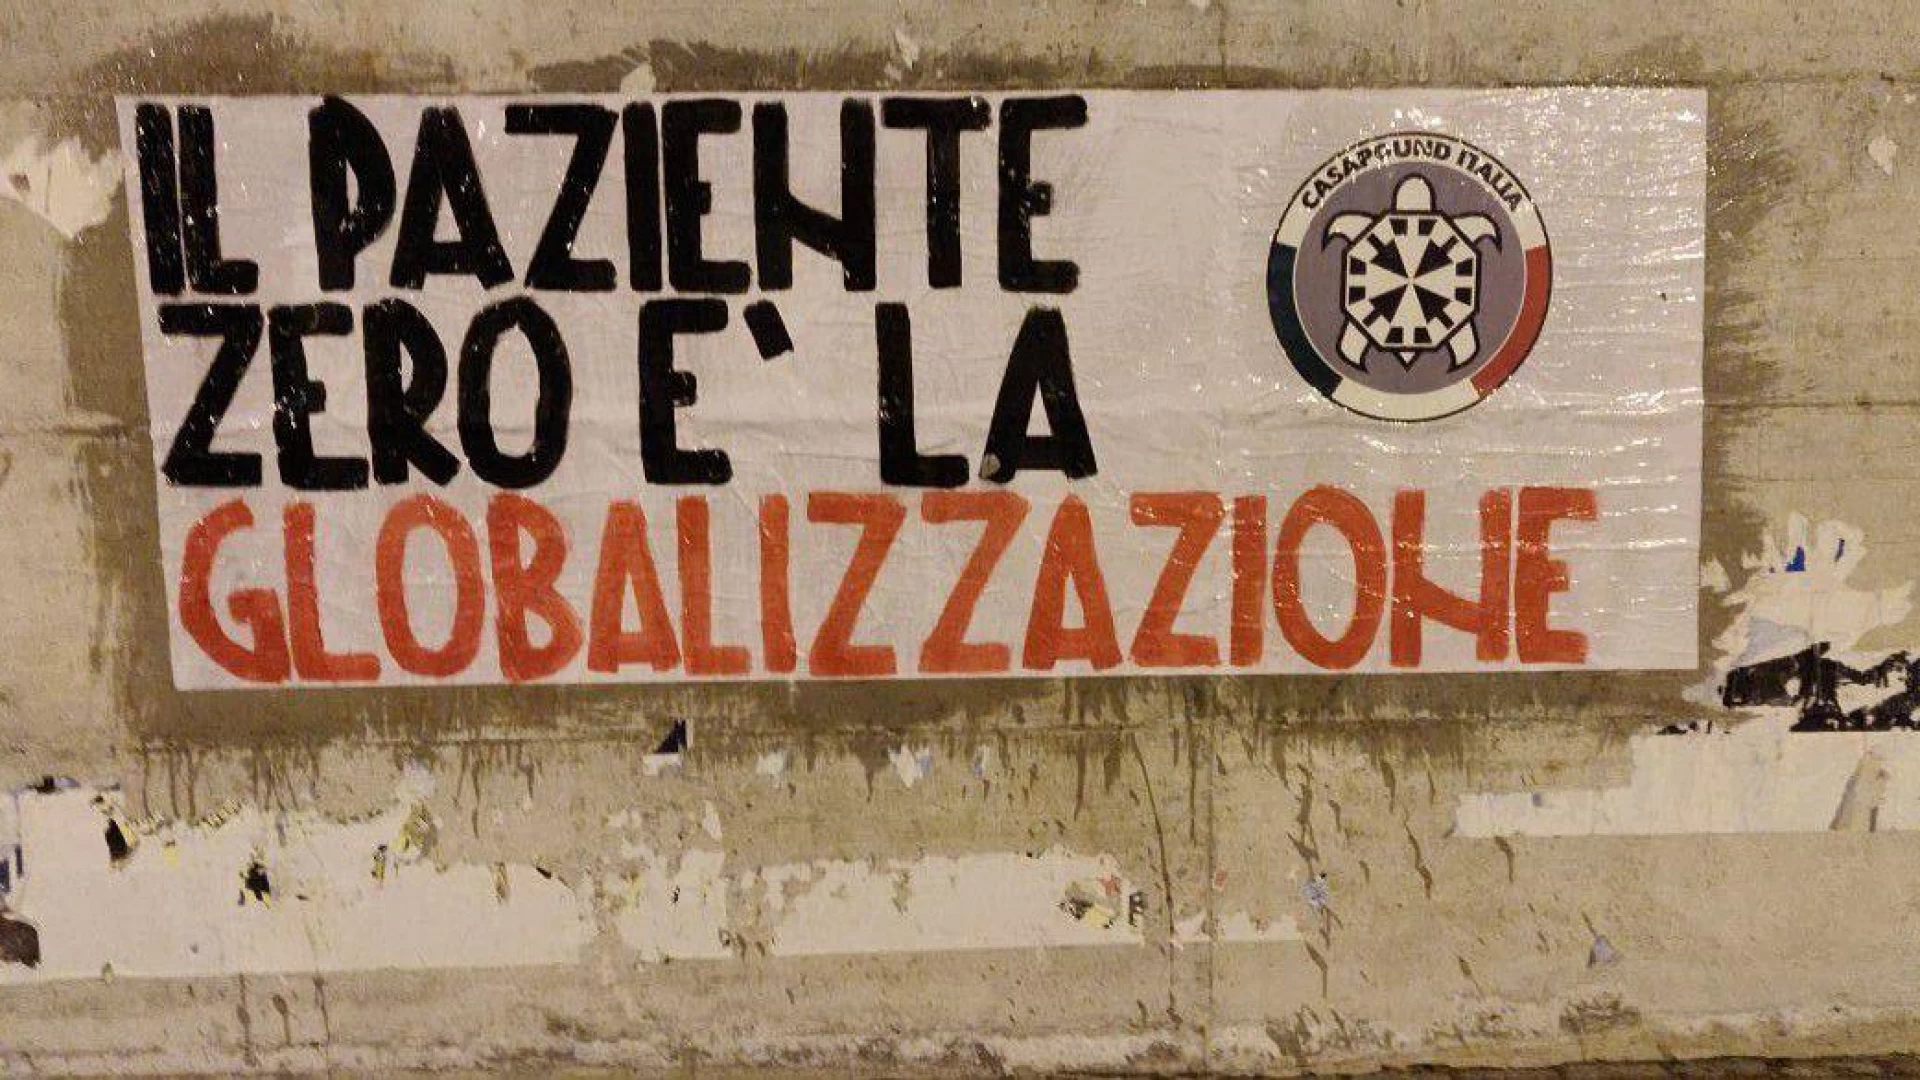 “Il paziente zero è la globalizzazione”, striscioni di CasaPound in tutta Italia su Coronavirus